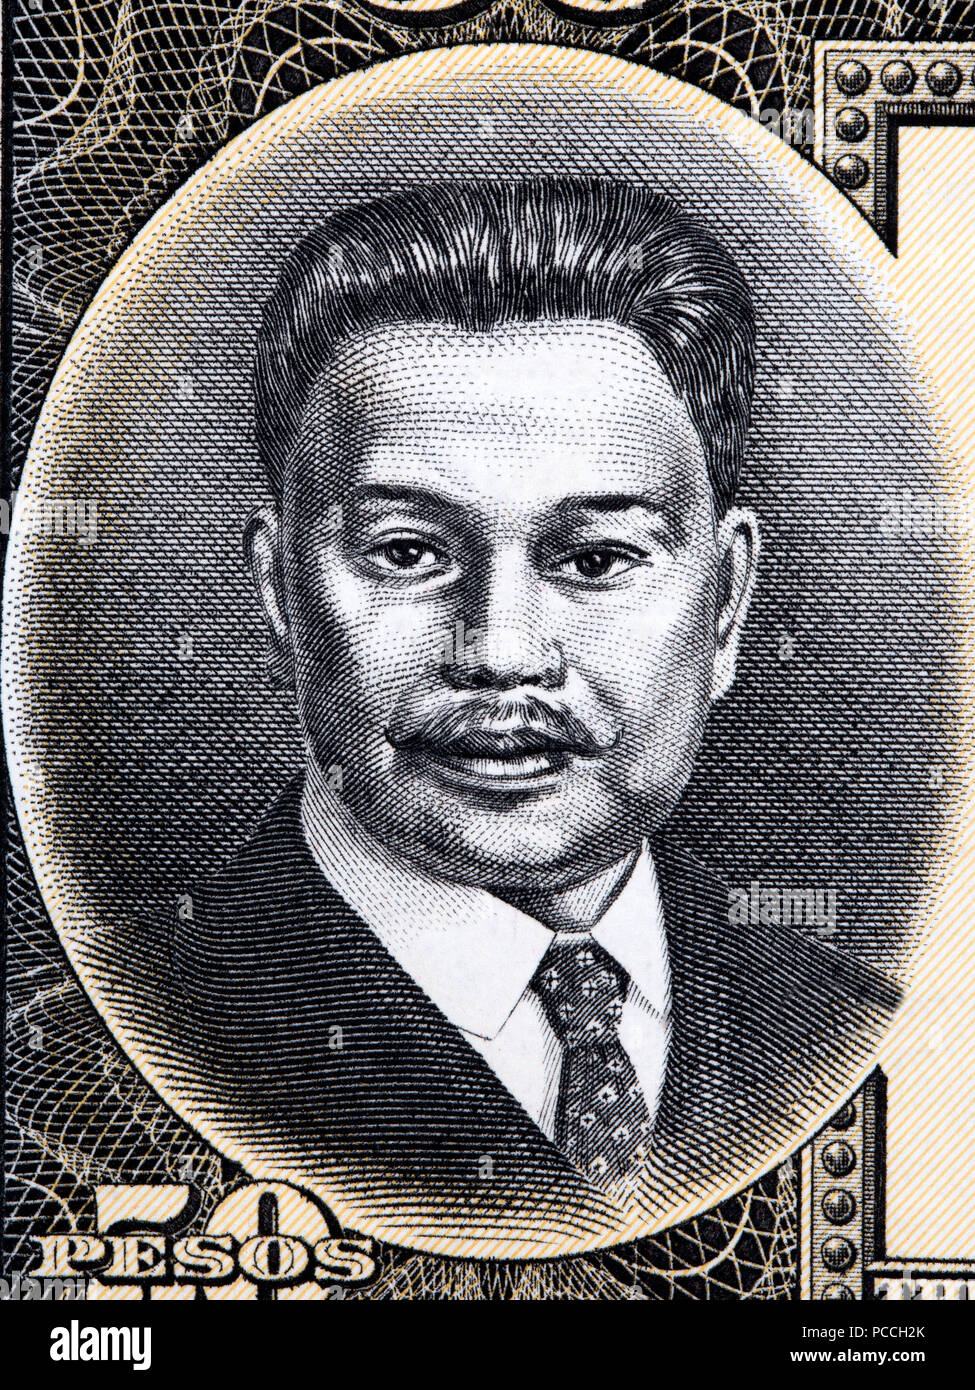 Antonio Luna portrait from Philippine money Stock Photo